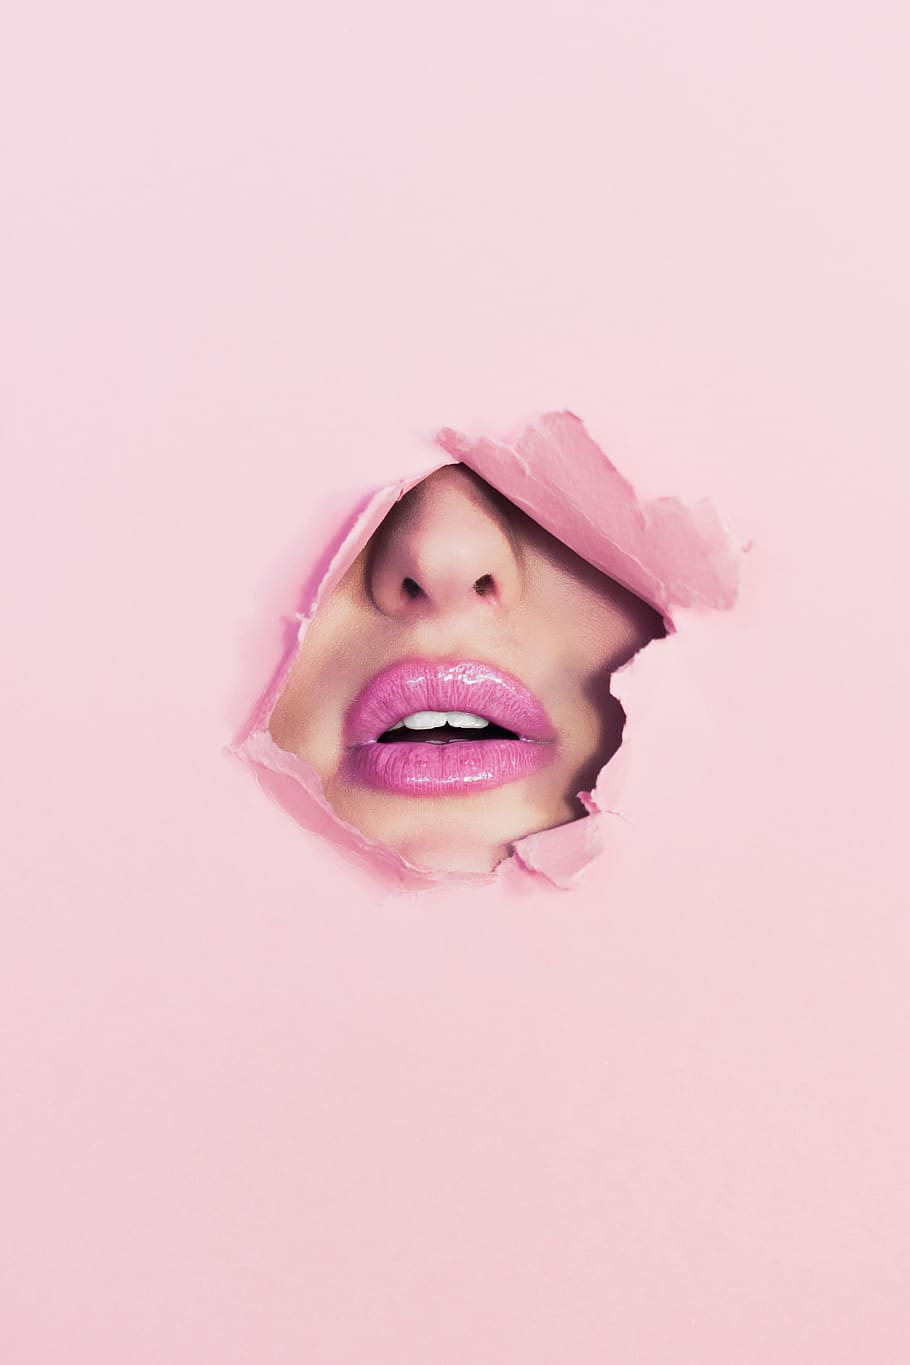 maquillaje, boca, pintalabios, mujer, color rosa, parte del cuerpo humano, mujeres, foto de estudio, una persona, boca humana